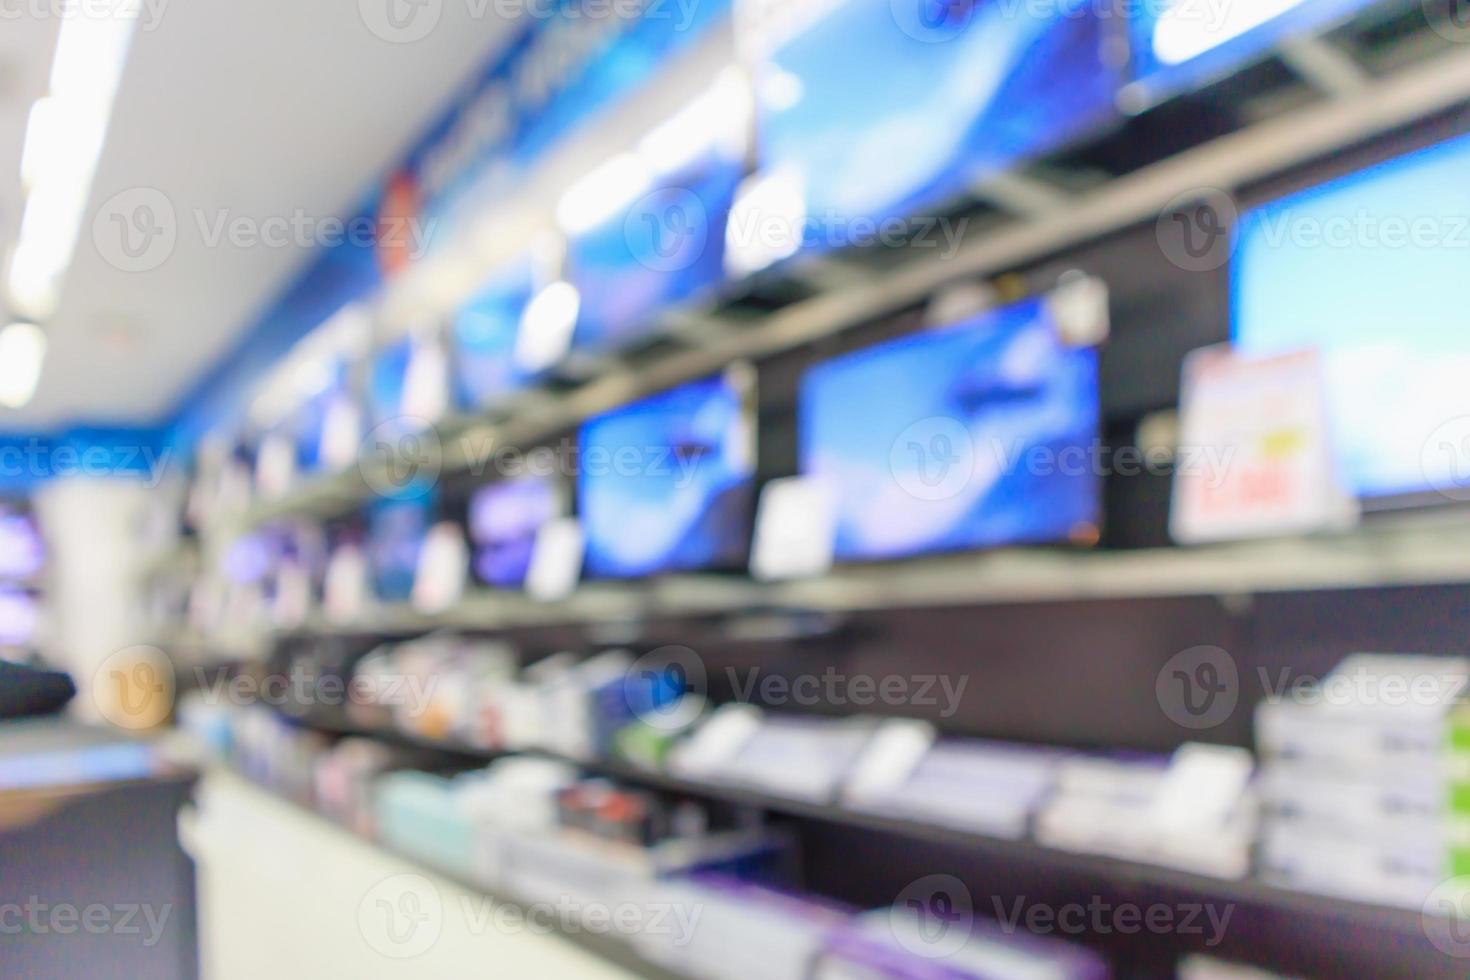 grande magazzino elettronico mostra televisione tv ed elettrodomestico con luce bokeh sfocato sfondo foto